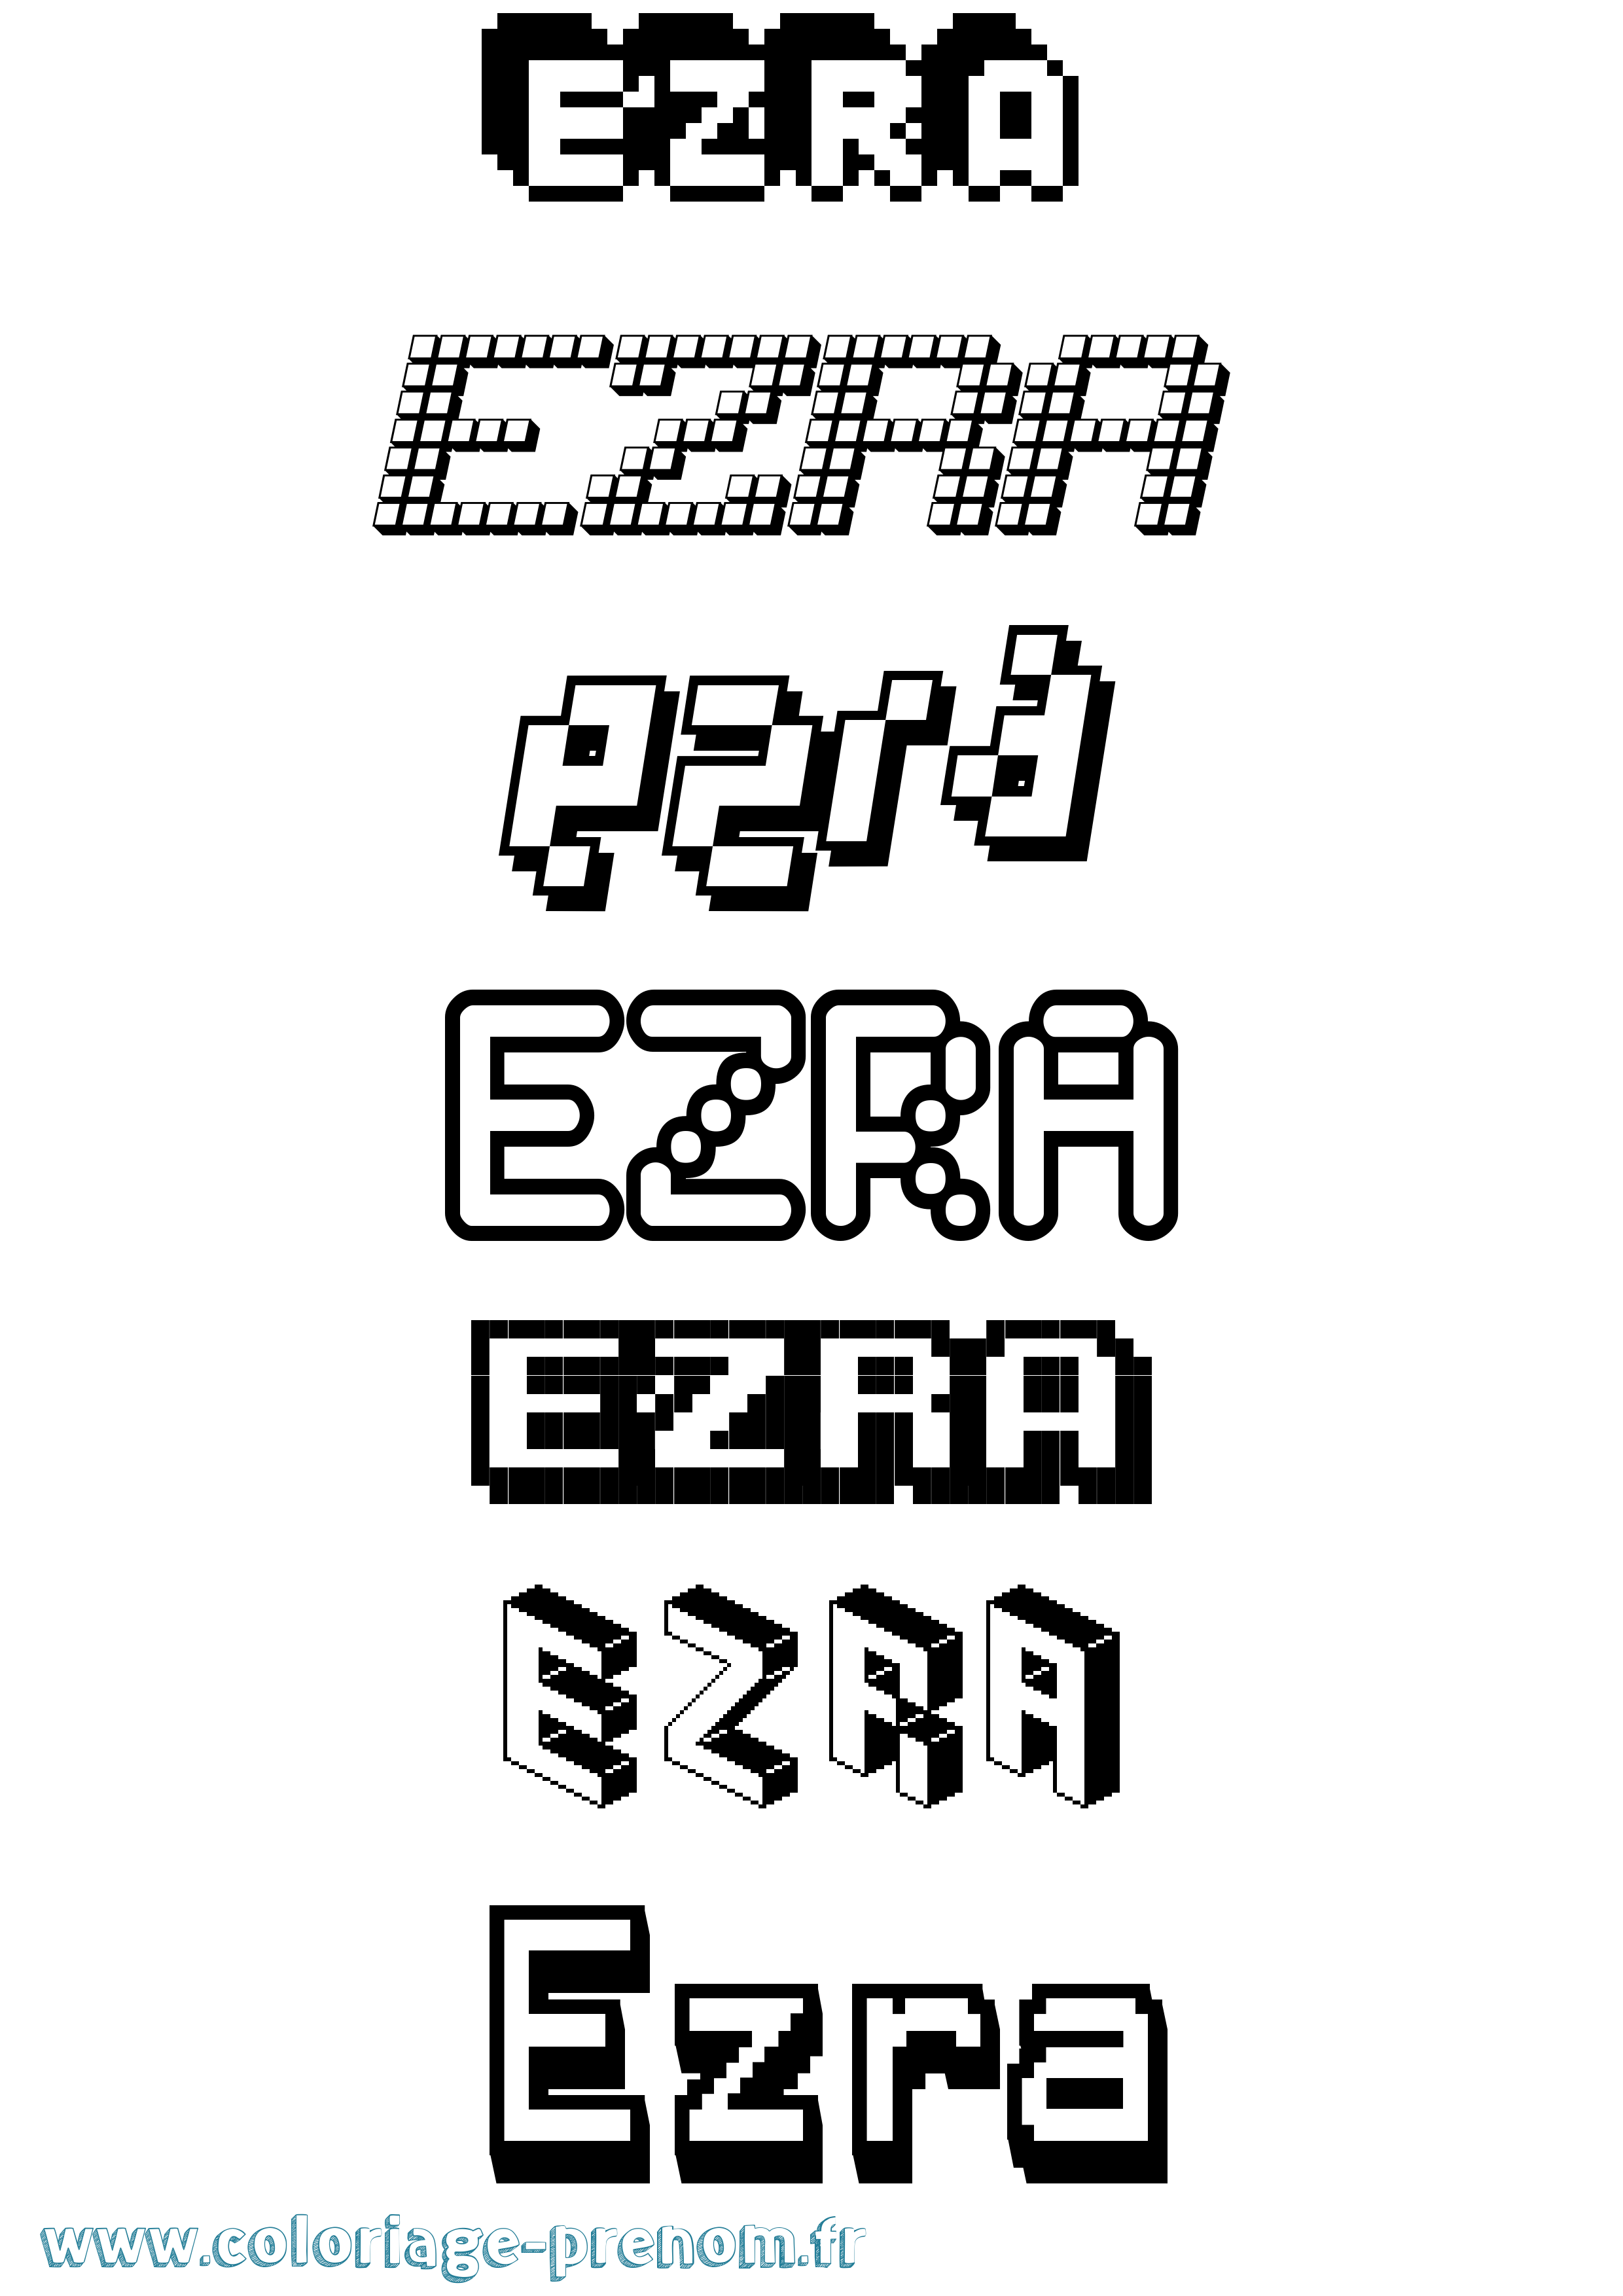 Coloriage prénom Ezra Pixel